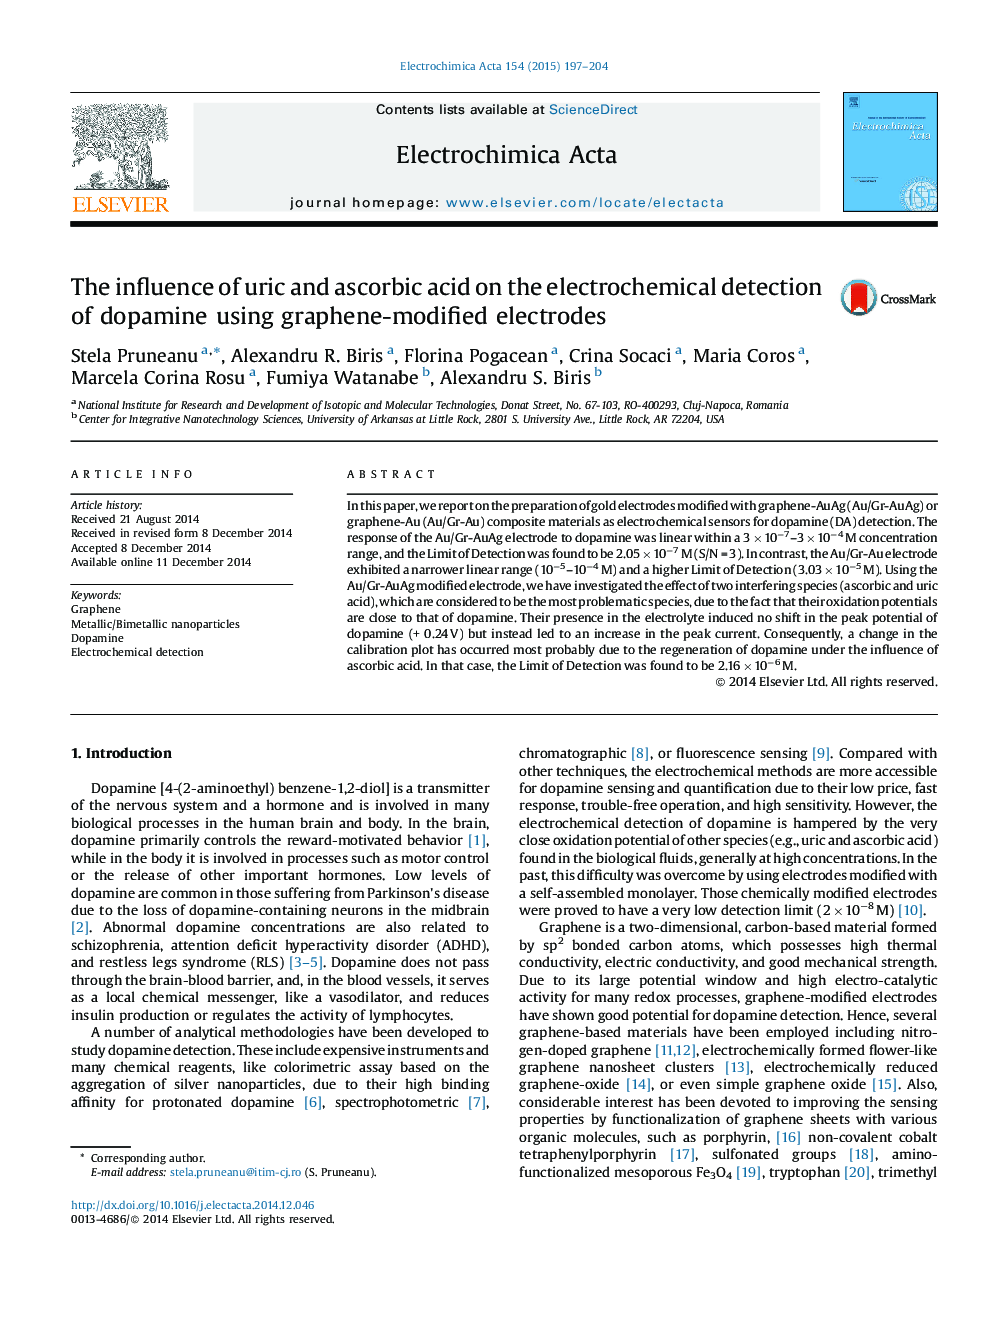 تأثیر اسید اوریک و اسکوربیک بر تشخیص الکتروشیمیایی دوپامین با استفاده از الکترودهای تغییر یافته گرافنی 